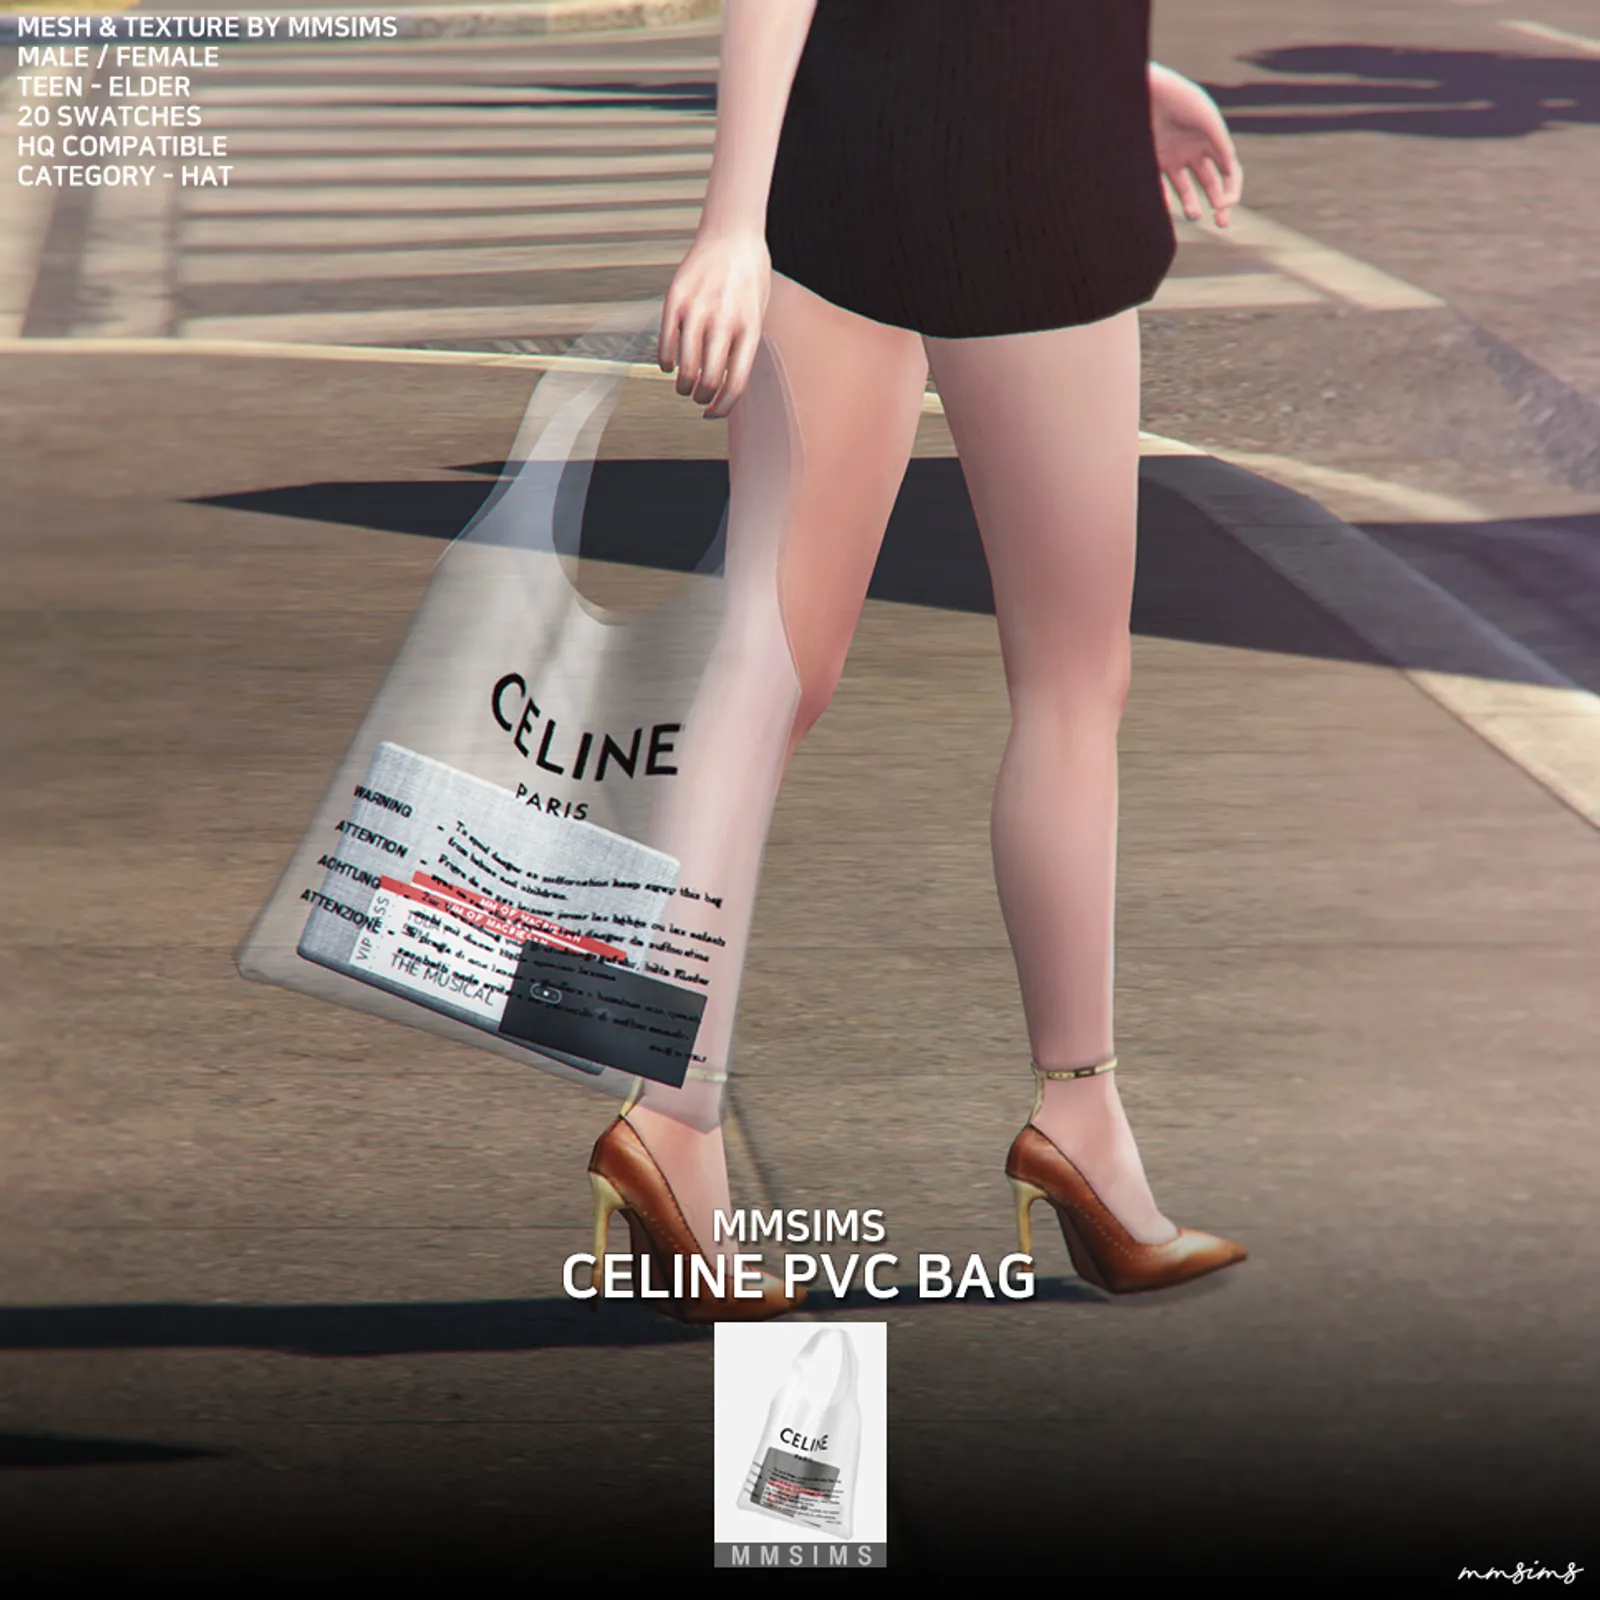 MMSIMS Celine PVC Bag & Poses